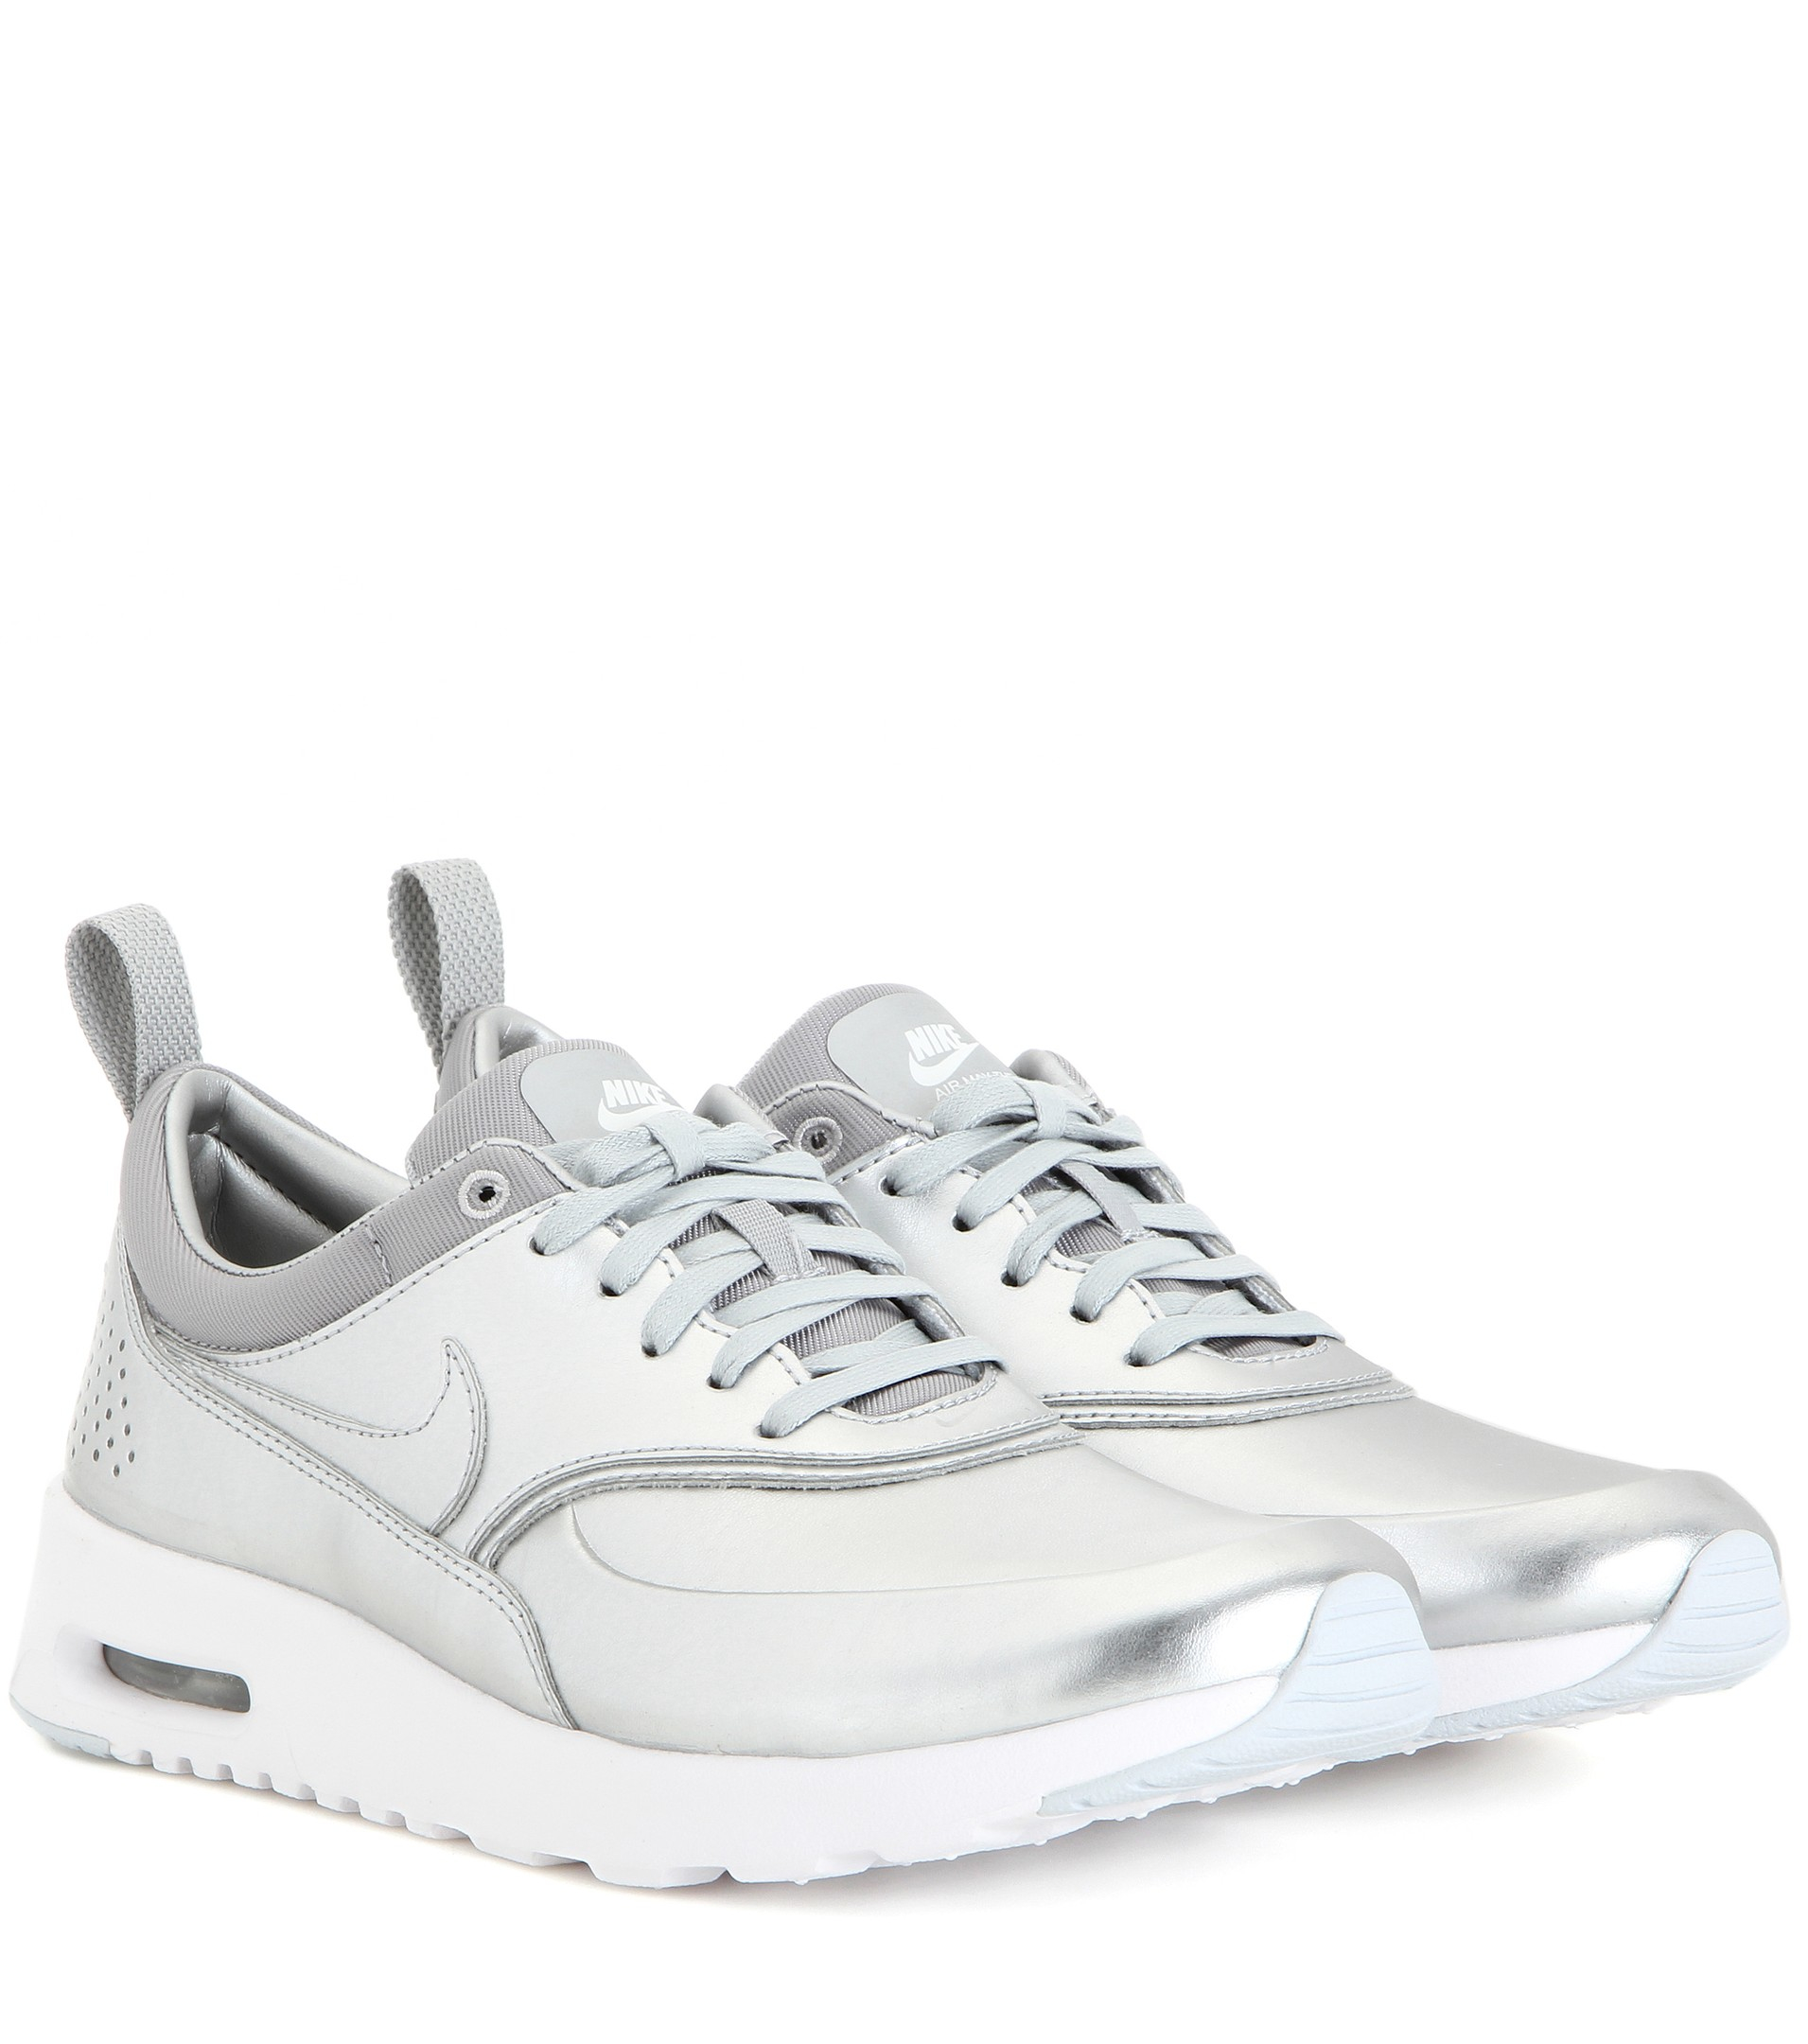 Rango Sostener alfiler Nike Air Max Thea Metallic Silver Sneakers | Lyst